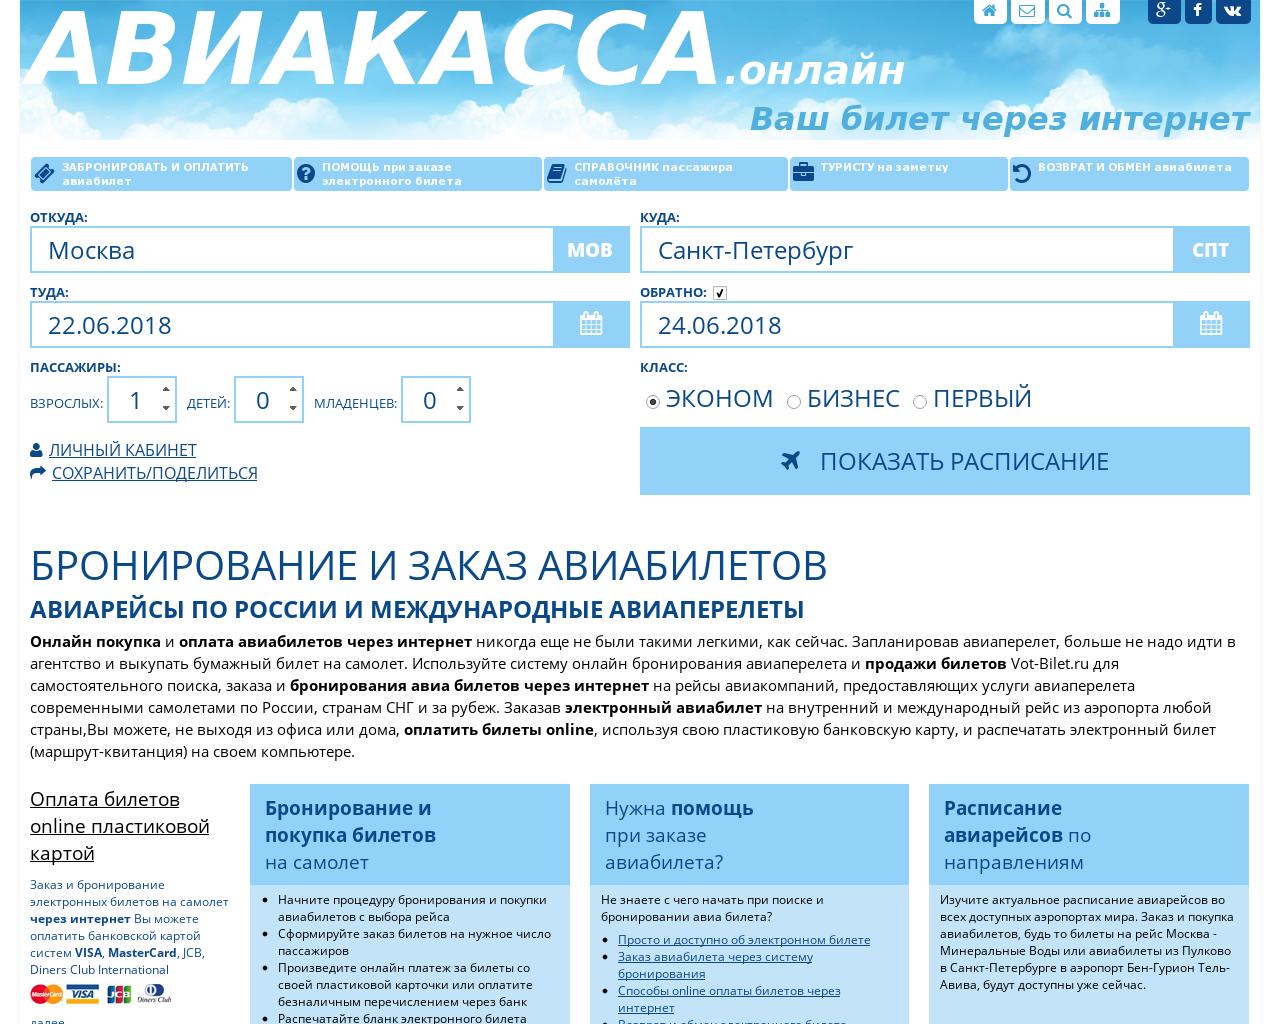 Абхазия билеты на самолет. Билеты онлайн. Авиабилеты онлайн. Интернет билет. Забронировать билеты.